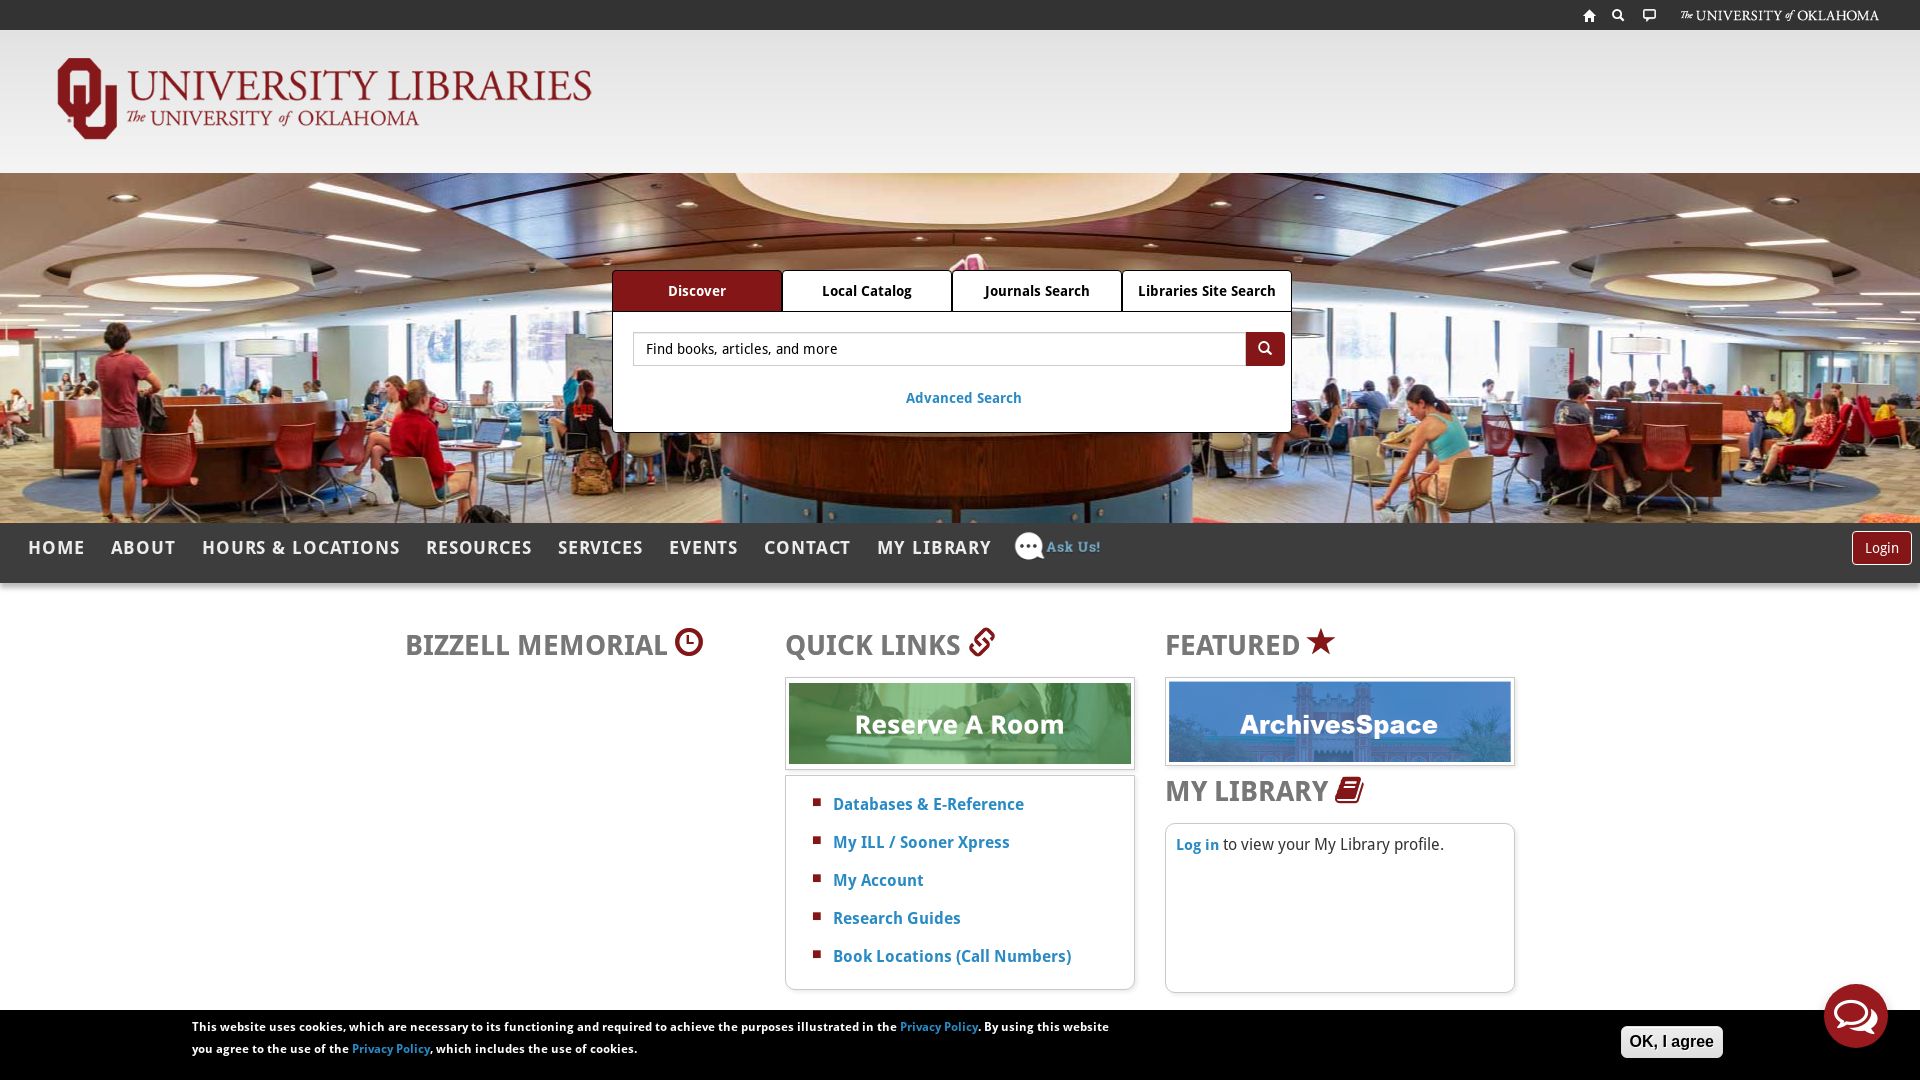 Website status libraries.ou.edu is   ONLINE